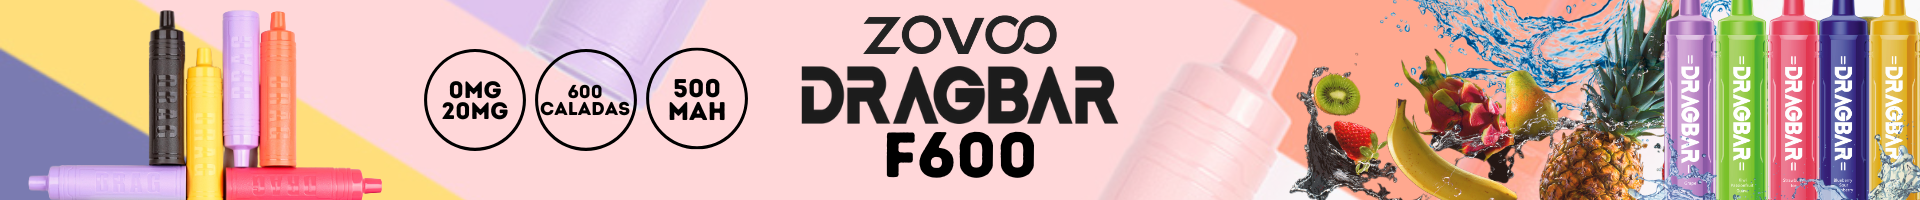 Venta al por mayor de los nuevos desechables Zovoo Dragbar F600